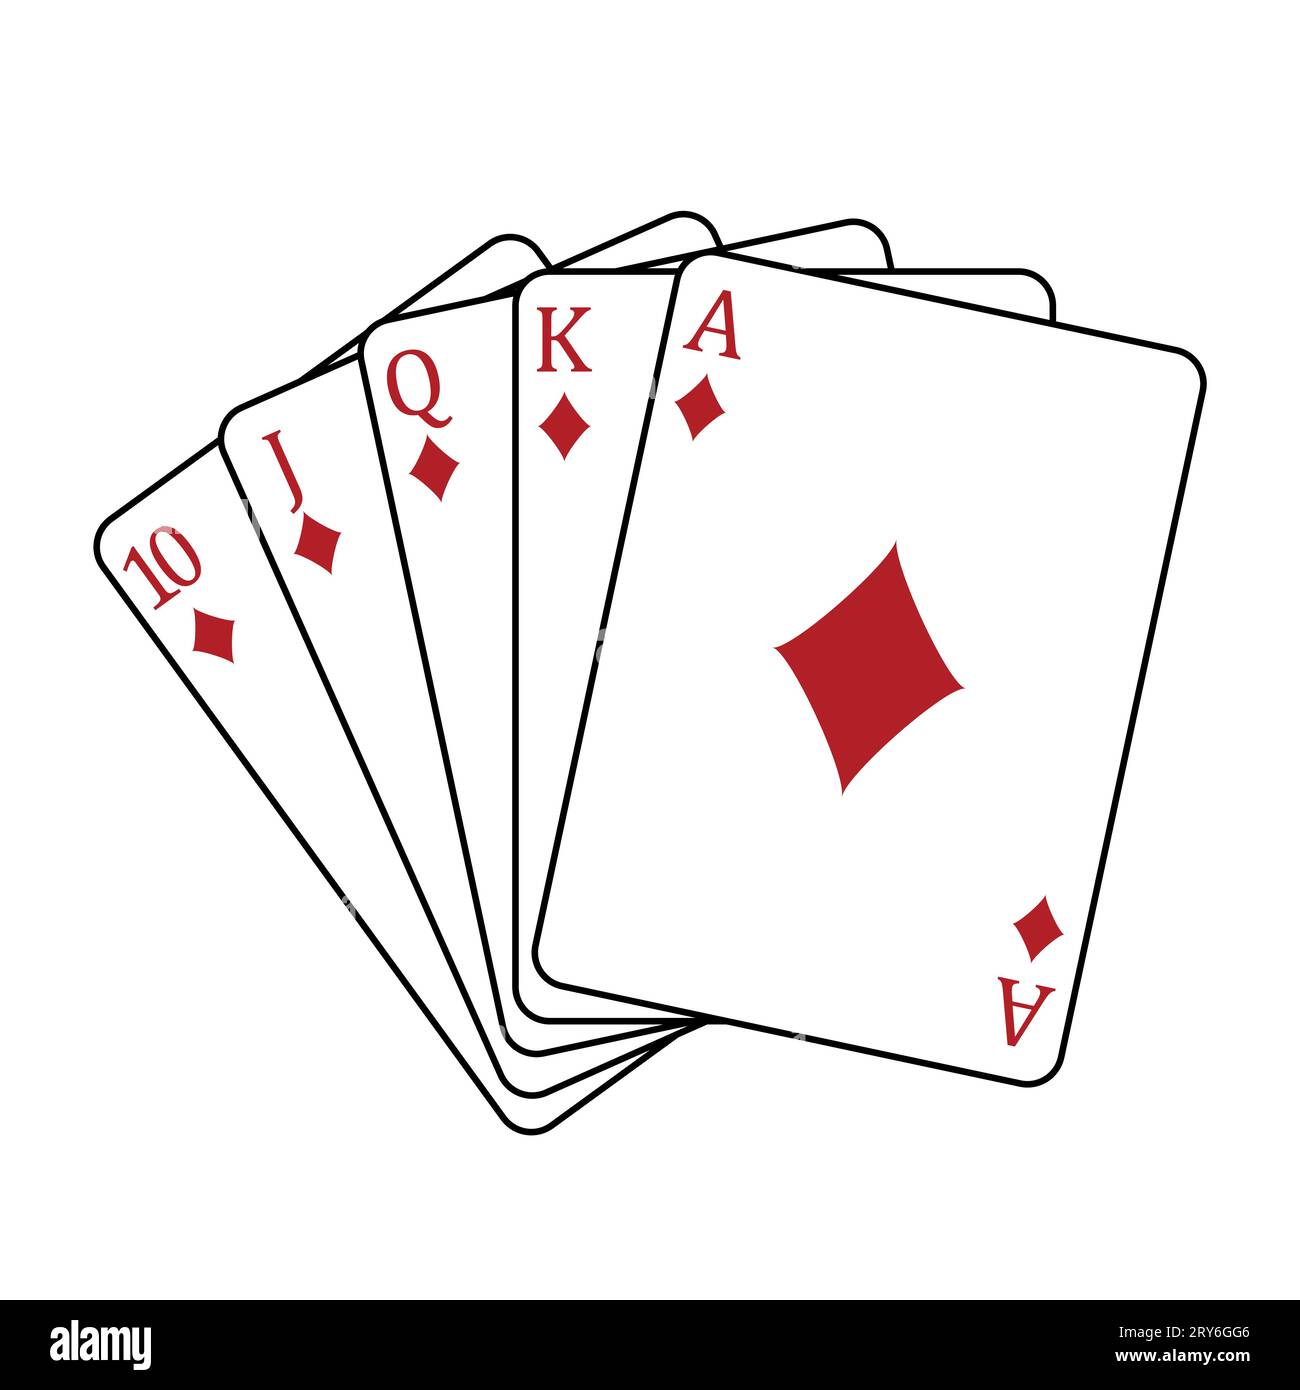 Carte da gioco - una mano di poker composta da un diamante reale a filo 10 J Q K A, illustrazione vettoriale isolata su bianco Illustrazione Vettoriale